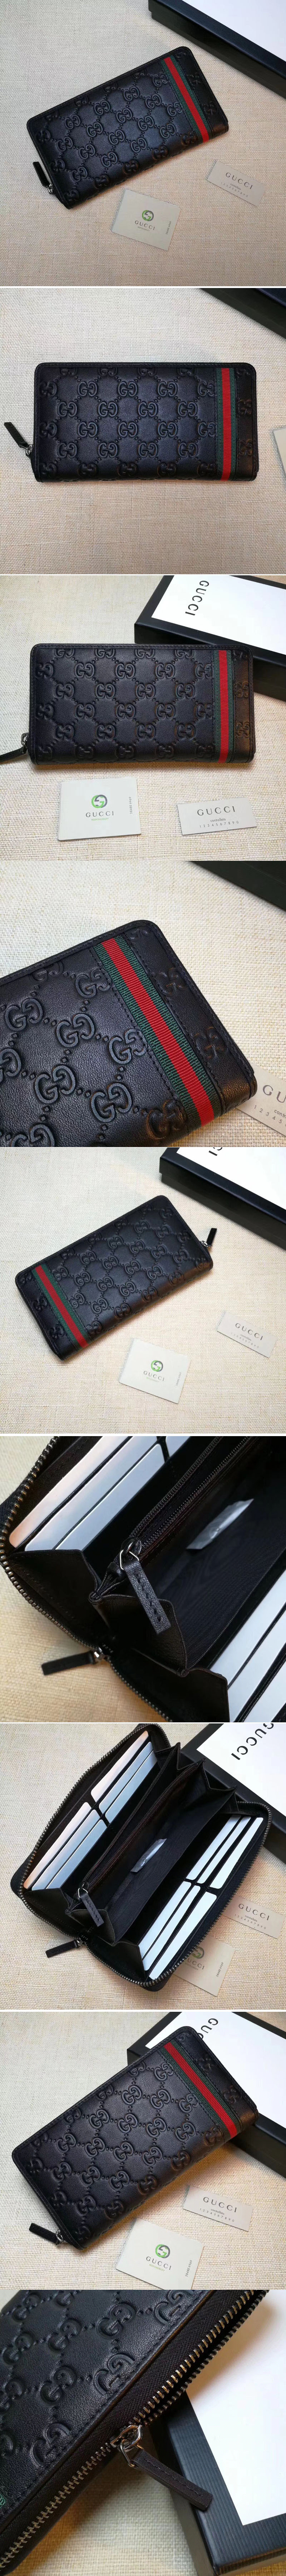 Replica Gucci 291105 Guccissima Leather Web Zip Around Wallet Black